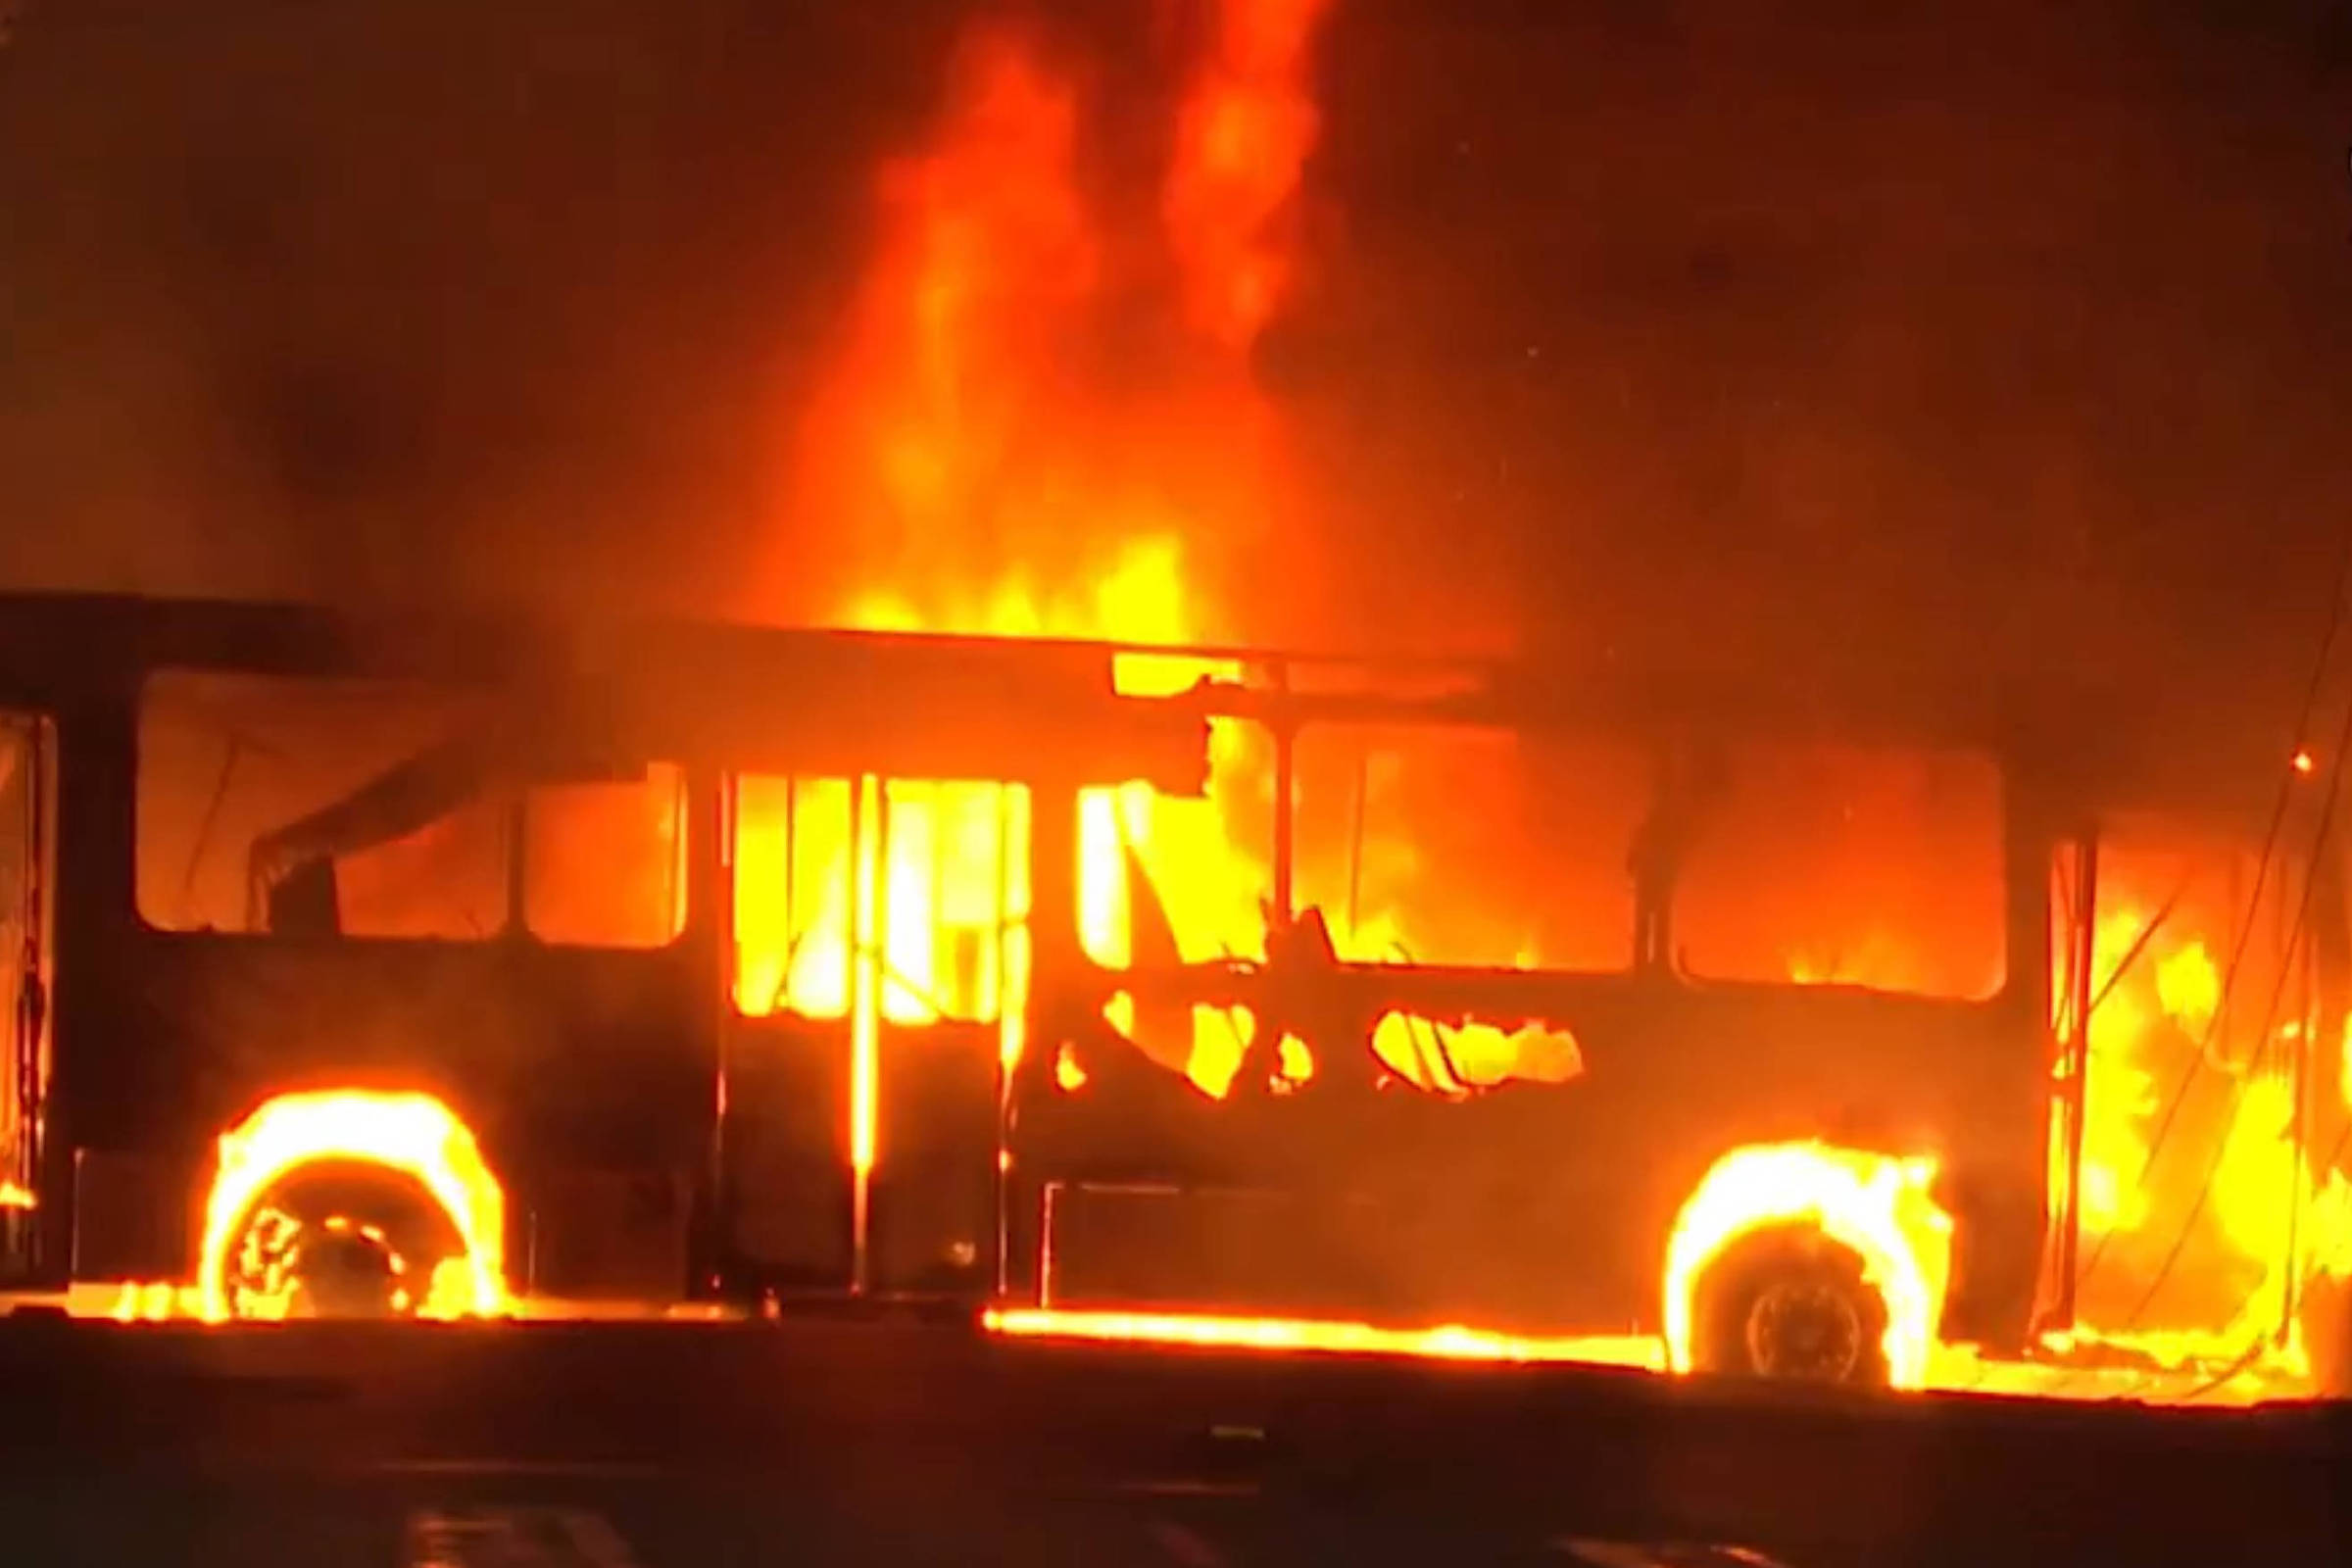 Ônibus com time de futebol pega fogo durante viagem para jogo do Campeonato  Paraibano, Paraíba